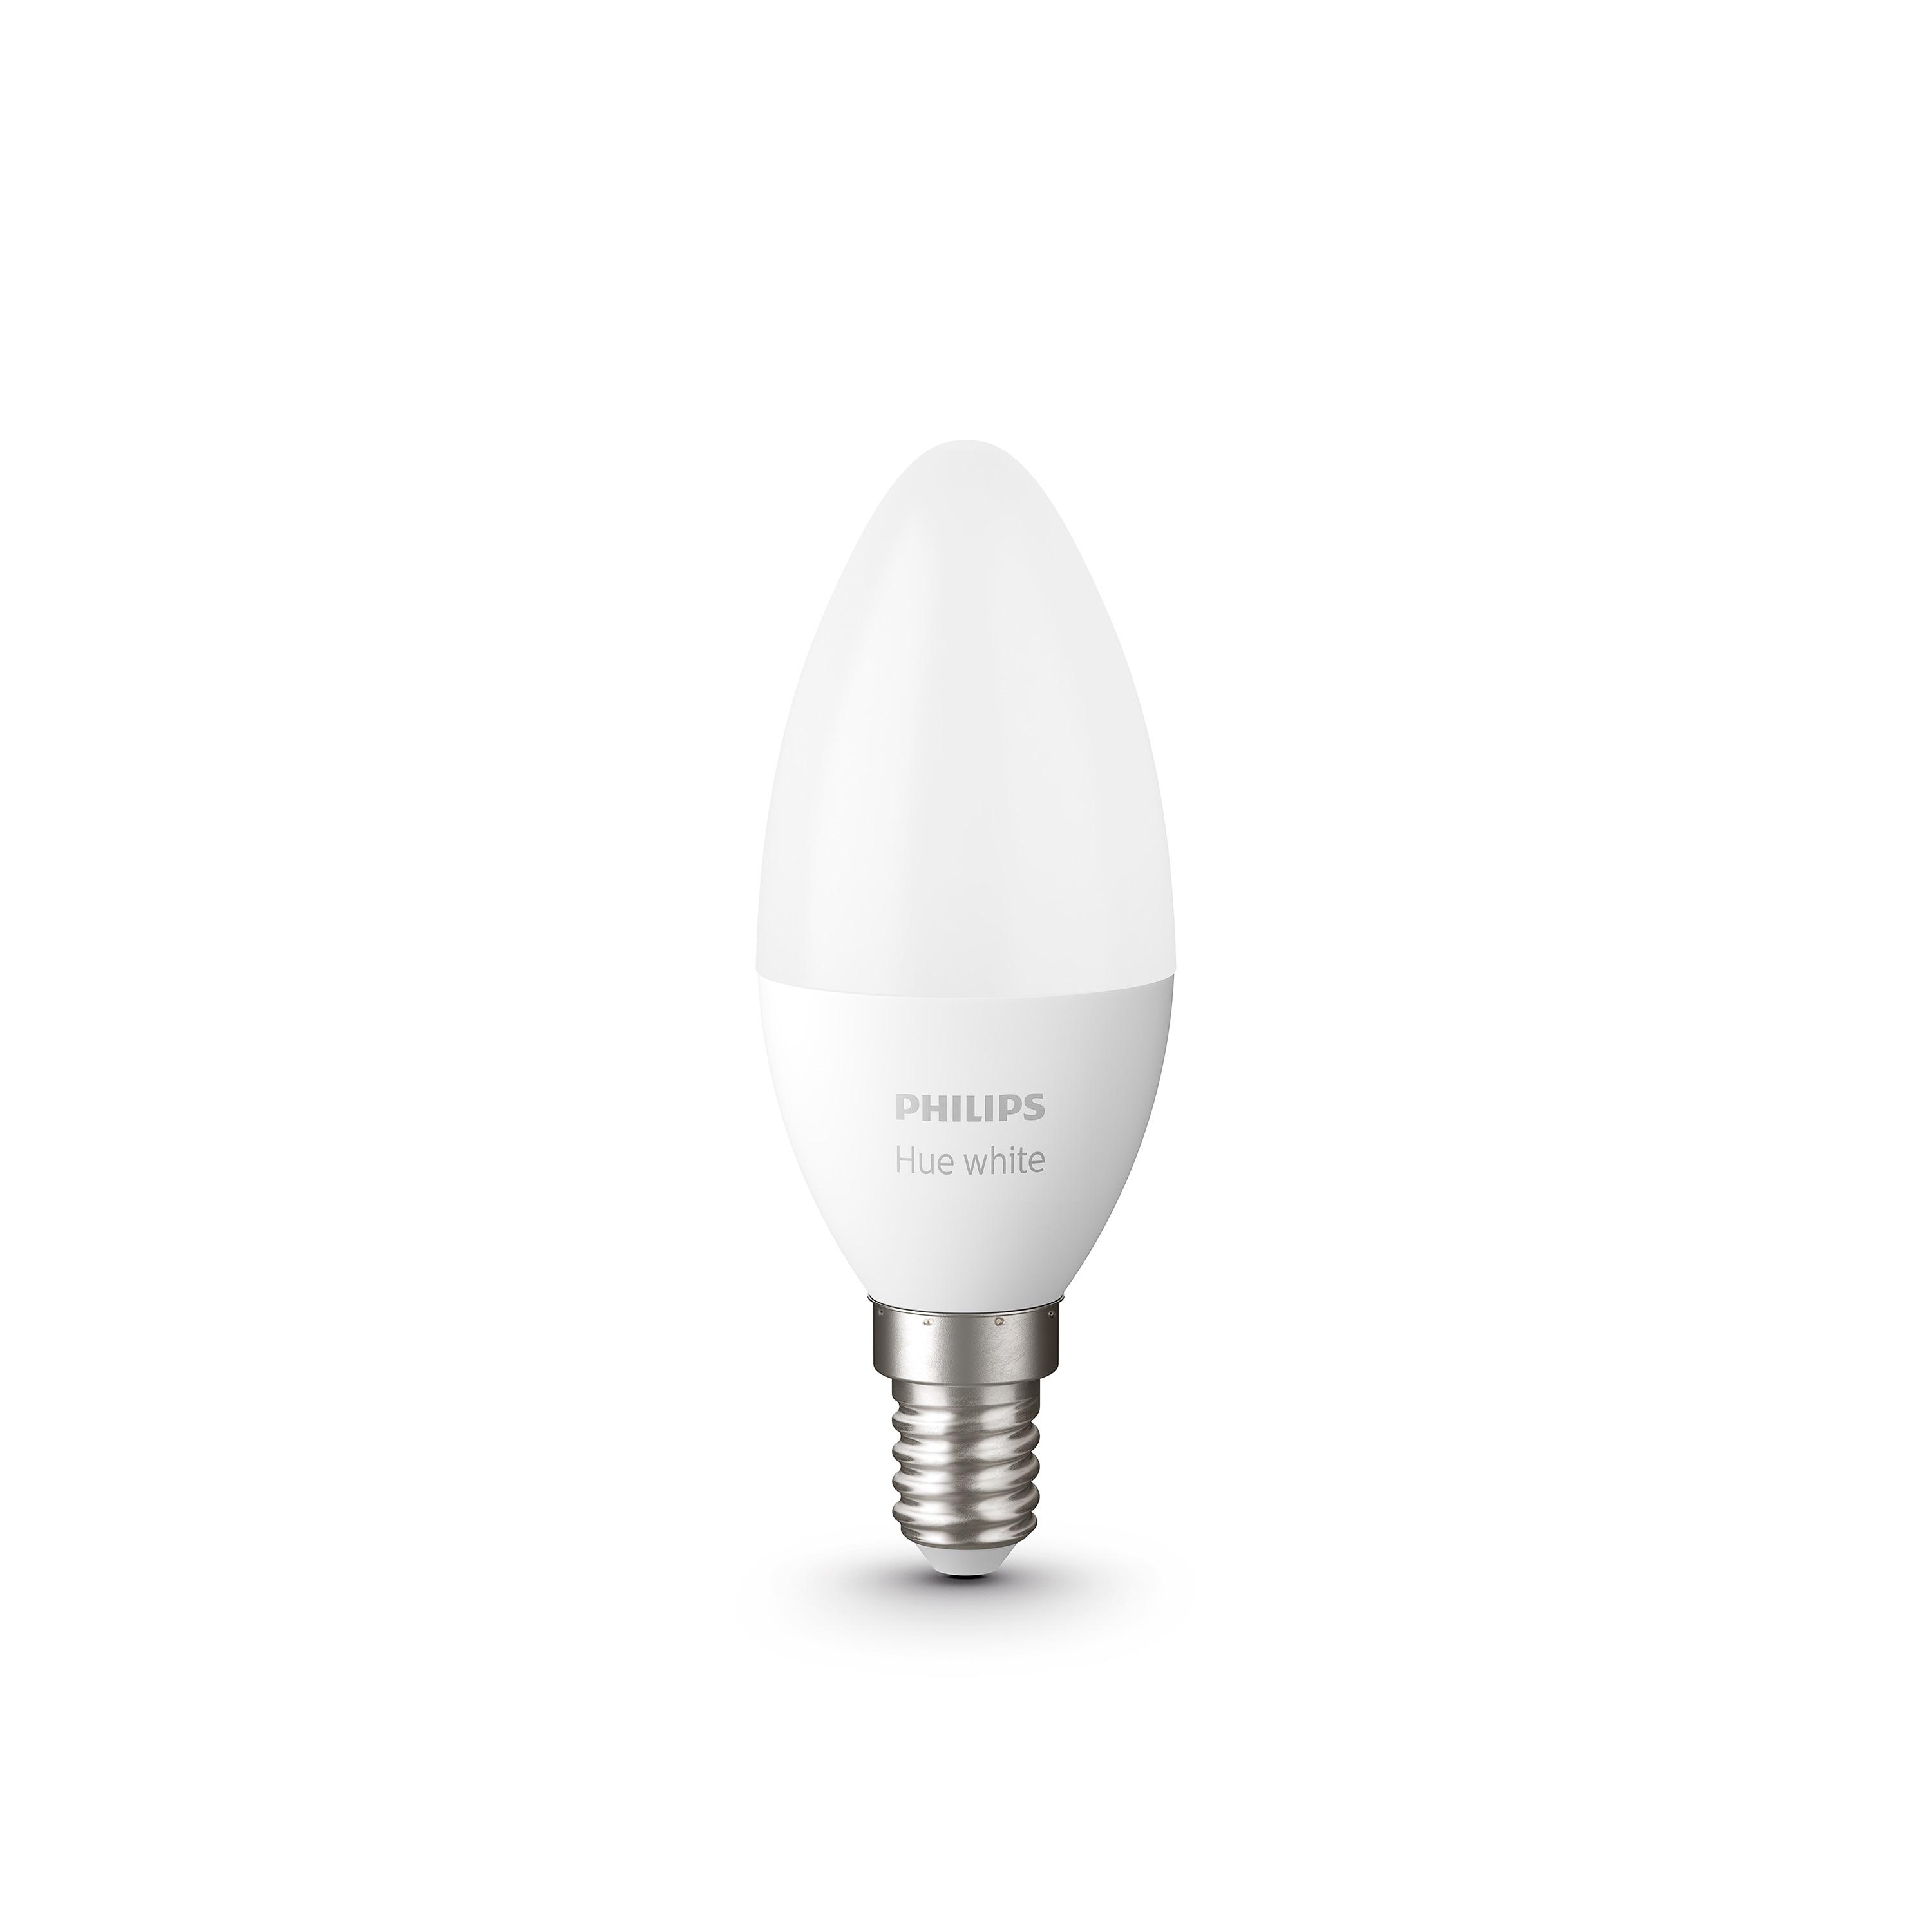 Характеристики світлодіодна лампа philips форма свічка Philips Led Hue E14 5.5W(40W) 2700K Bluetooth Dim набор 2 шт (929002039904)